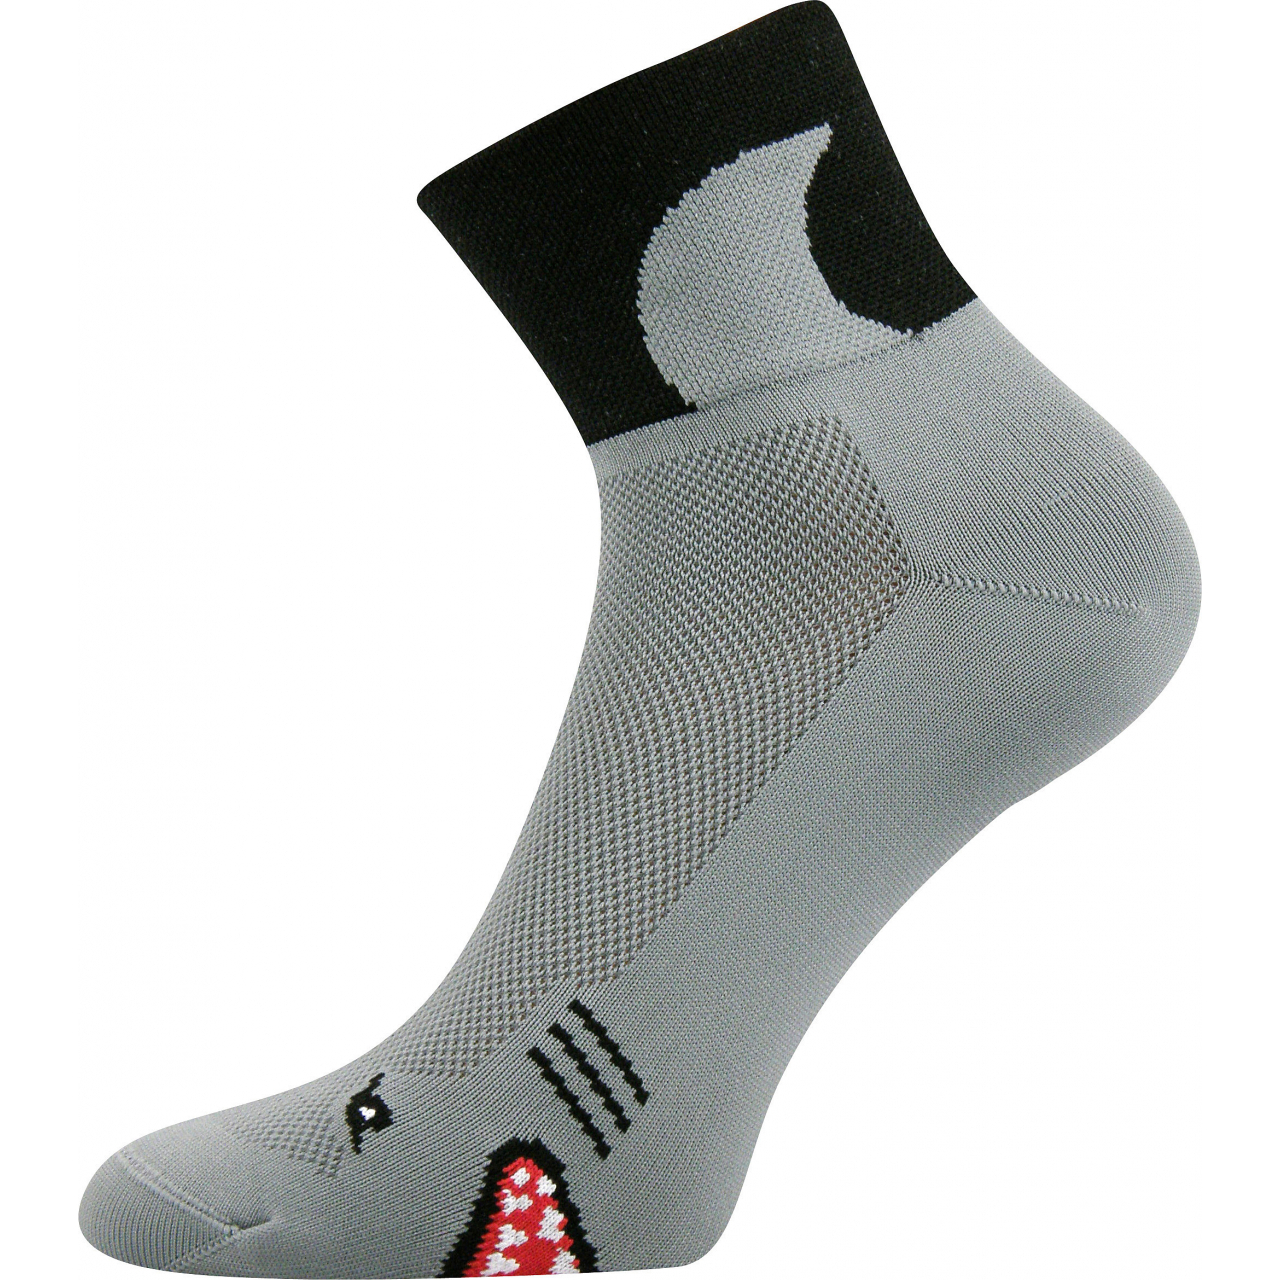 Ponožky sportovní unisex Voxx Ralf X Žraloci - šedé-černé, 35-38